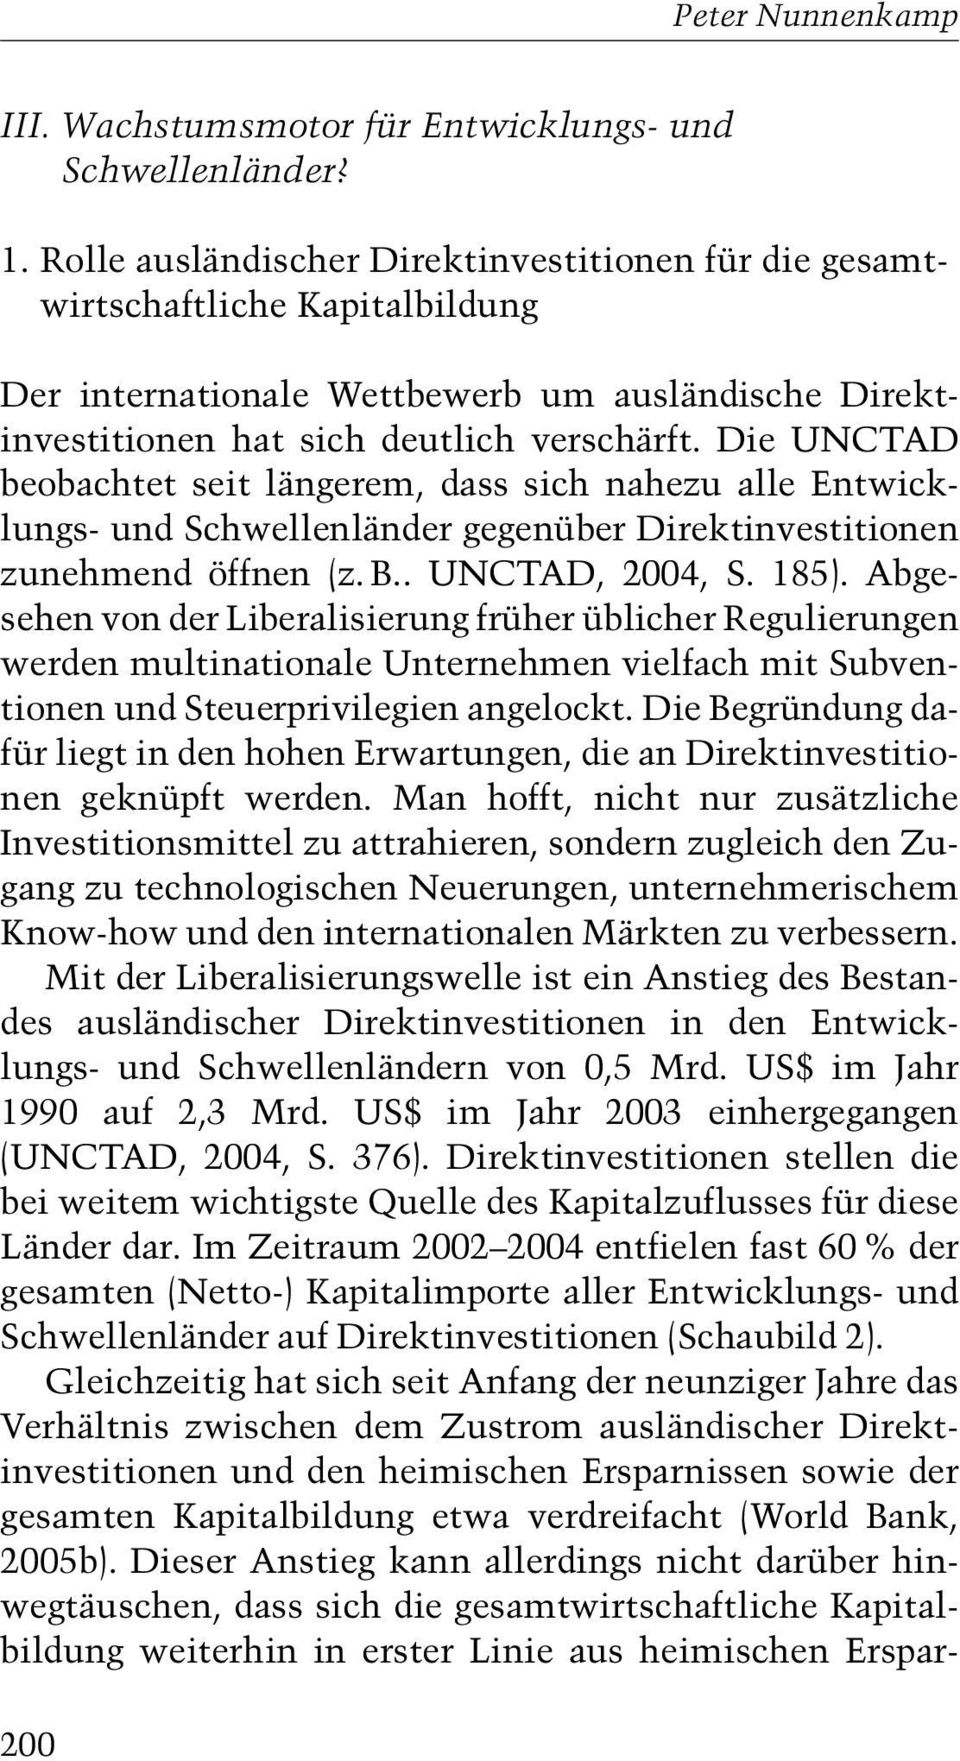 Die UNCTAD beobachtet seit längerem, dass sich nahezu alle Entwicklungs-und Schwellenländer gegenüber Direktinvestitionen zunehmend öffnen z. B.. UNCTAD, 2004, S. 185).